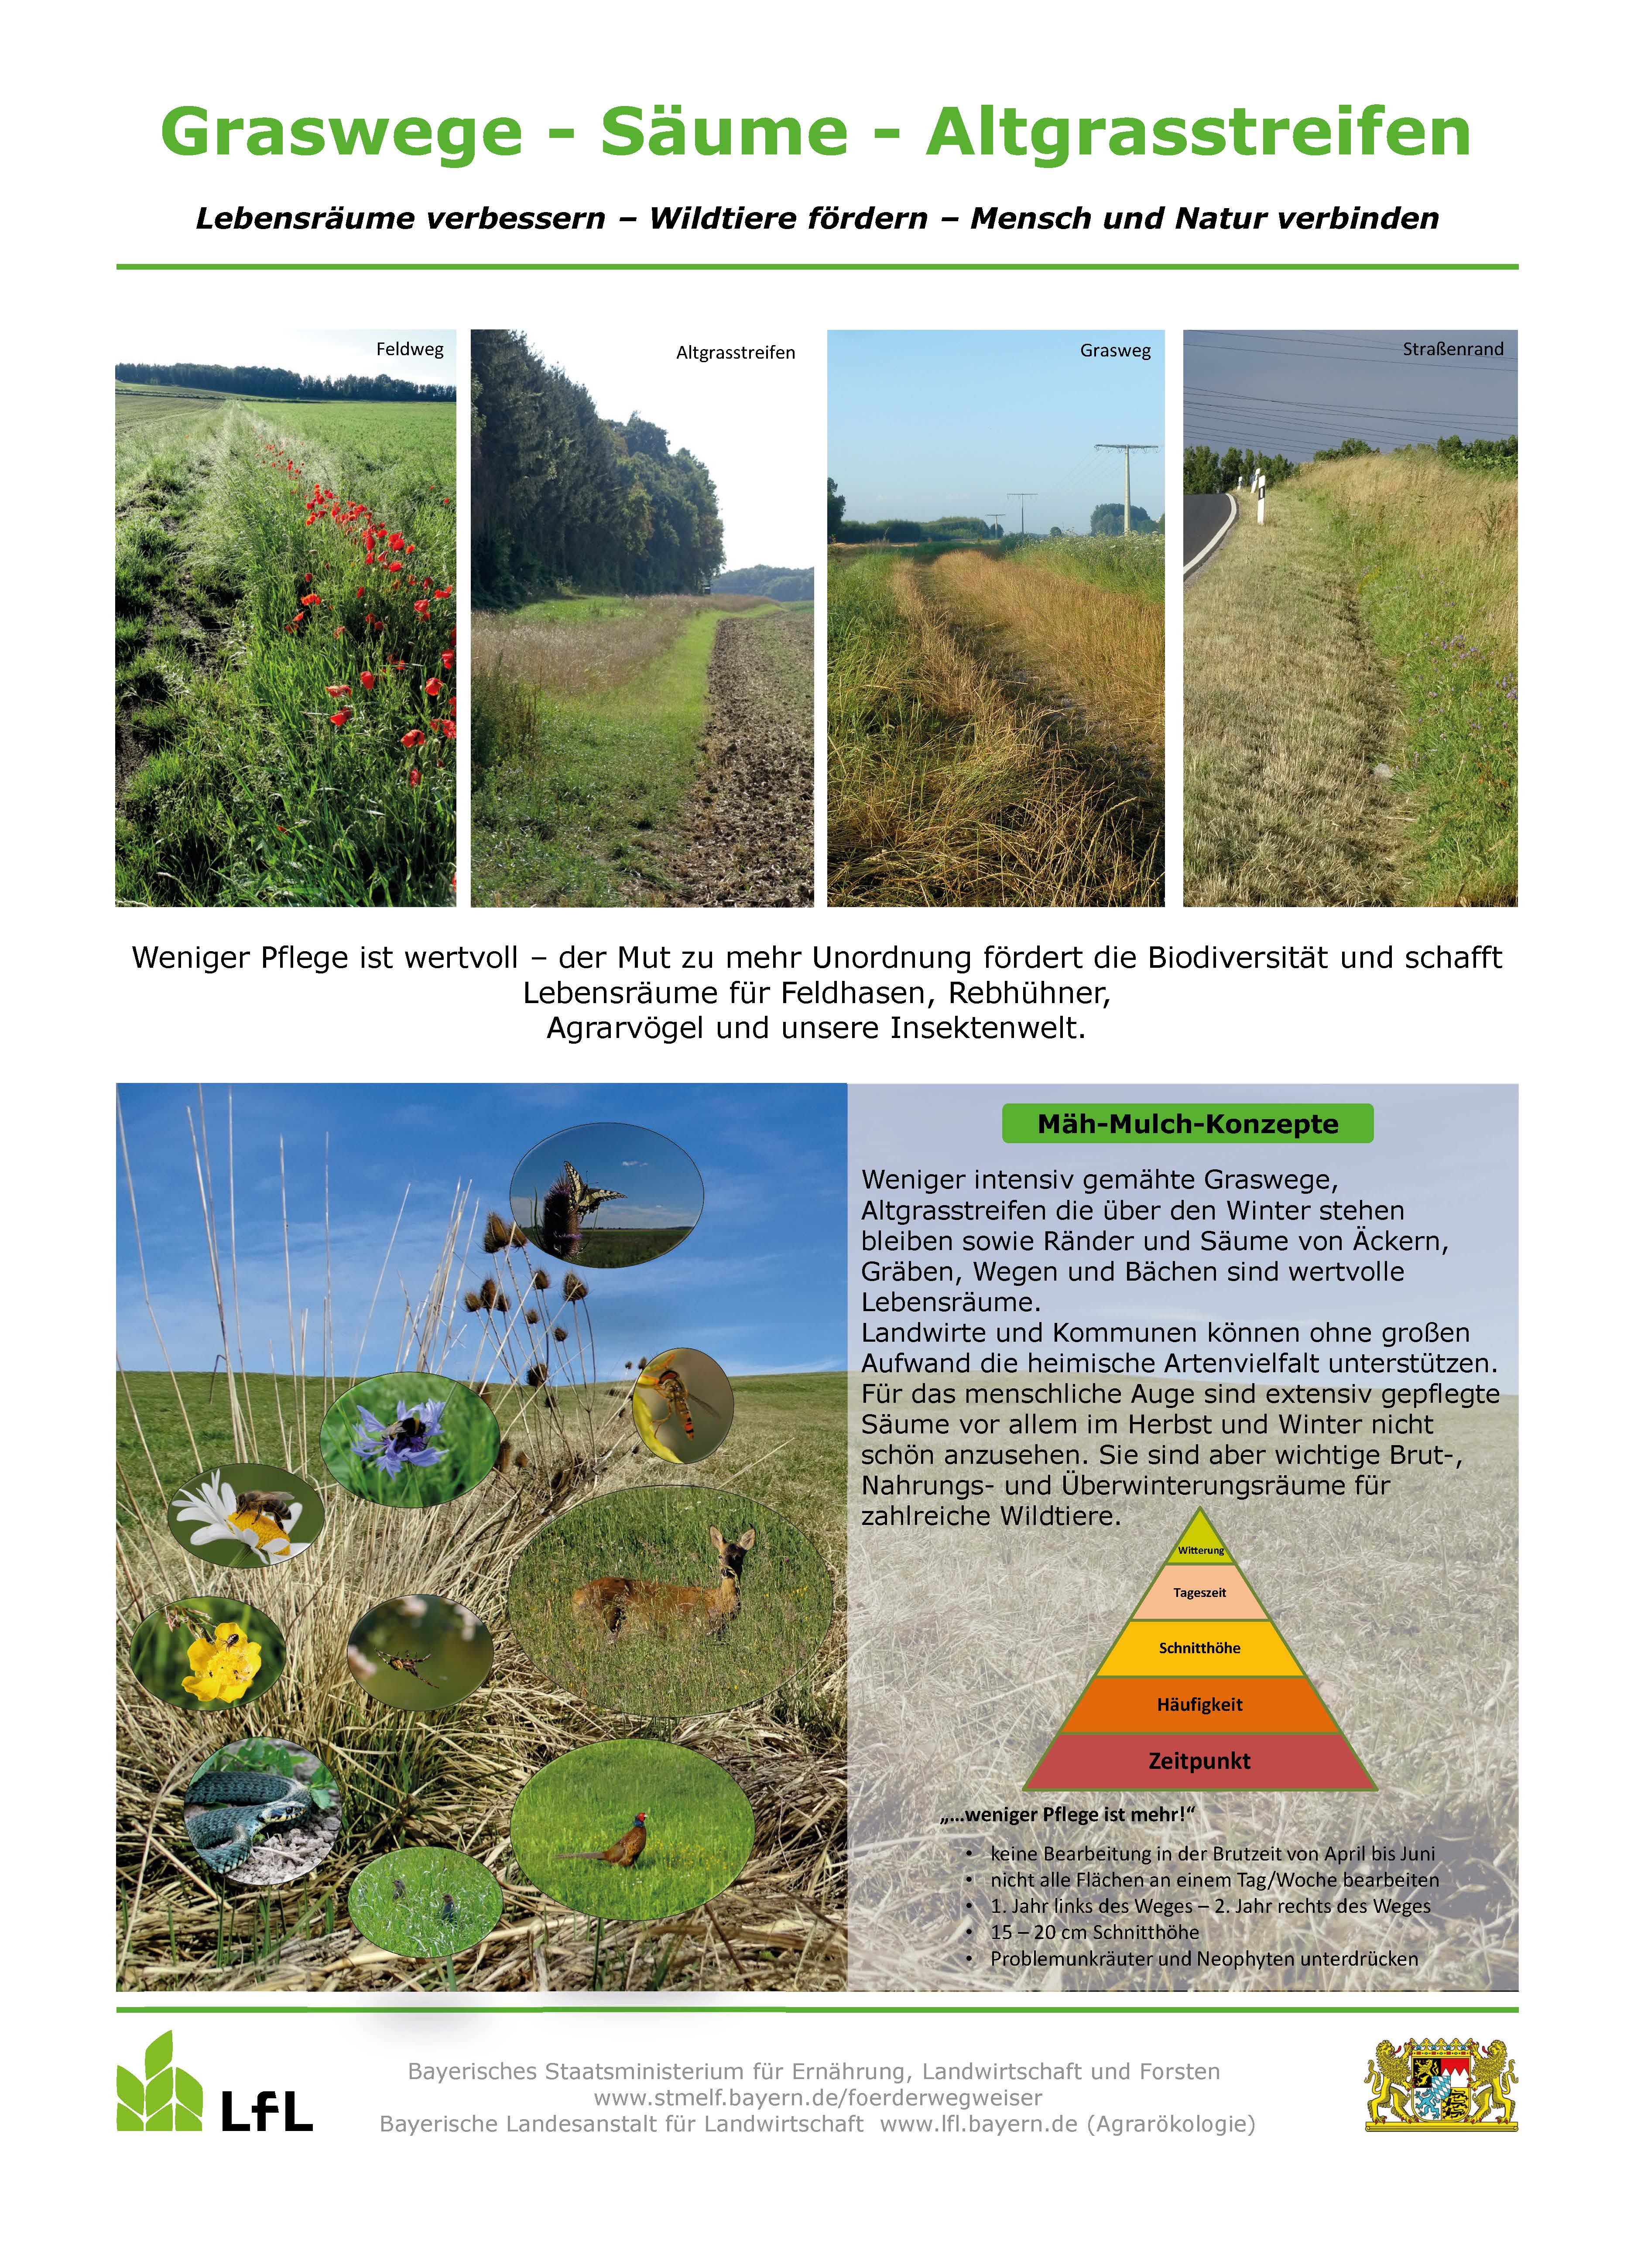 Schild Blühfläche für Artenvielfalt / Landwirtschaft und Naturschutz mit  Rebhuhn & Feldhamster